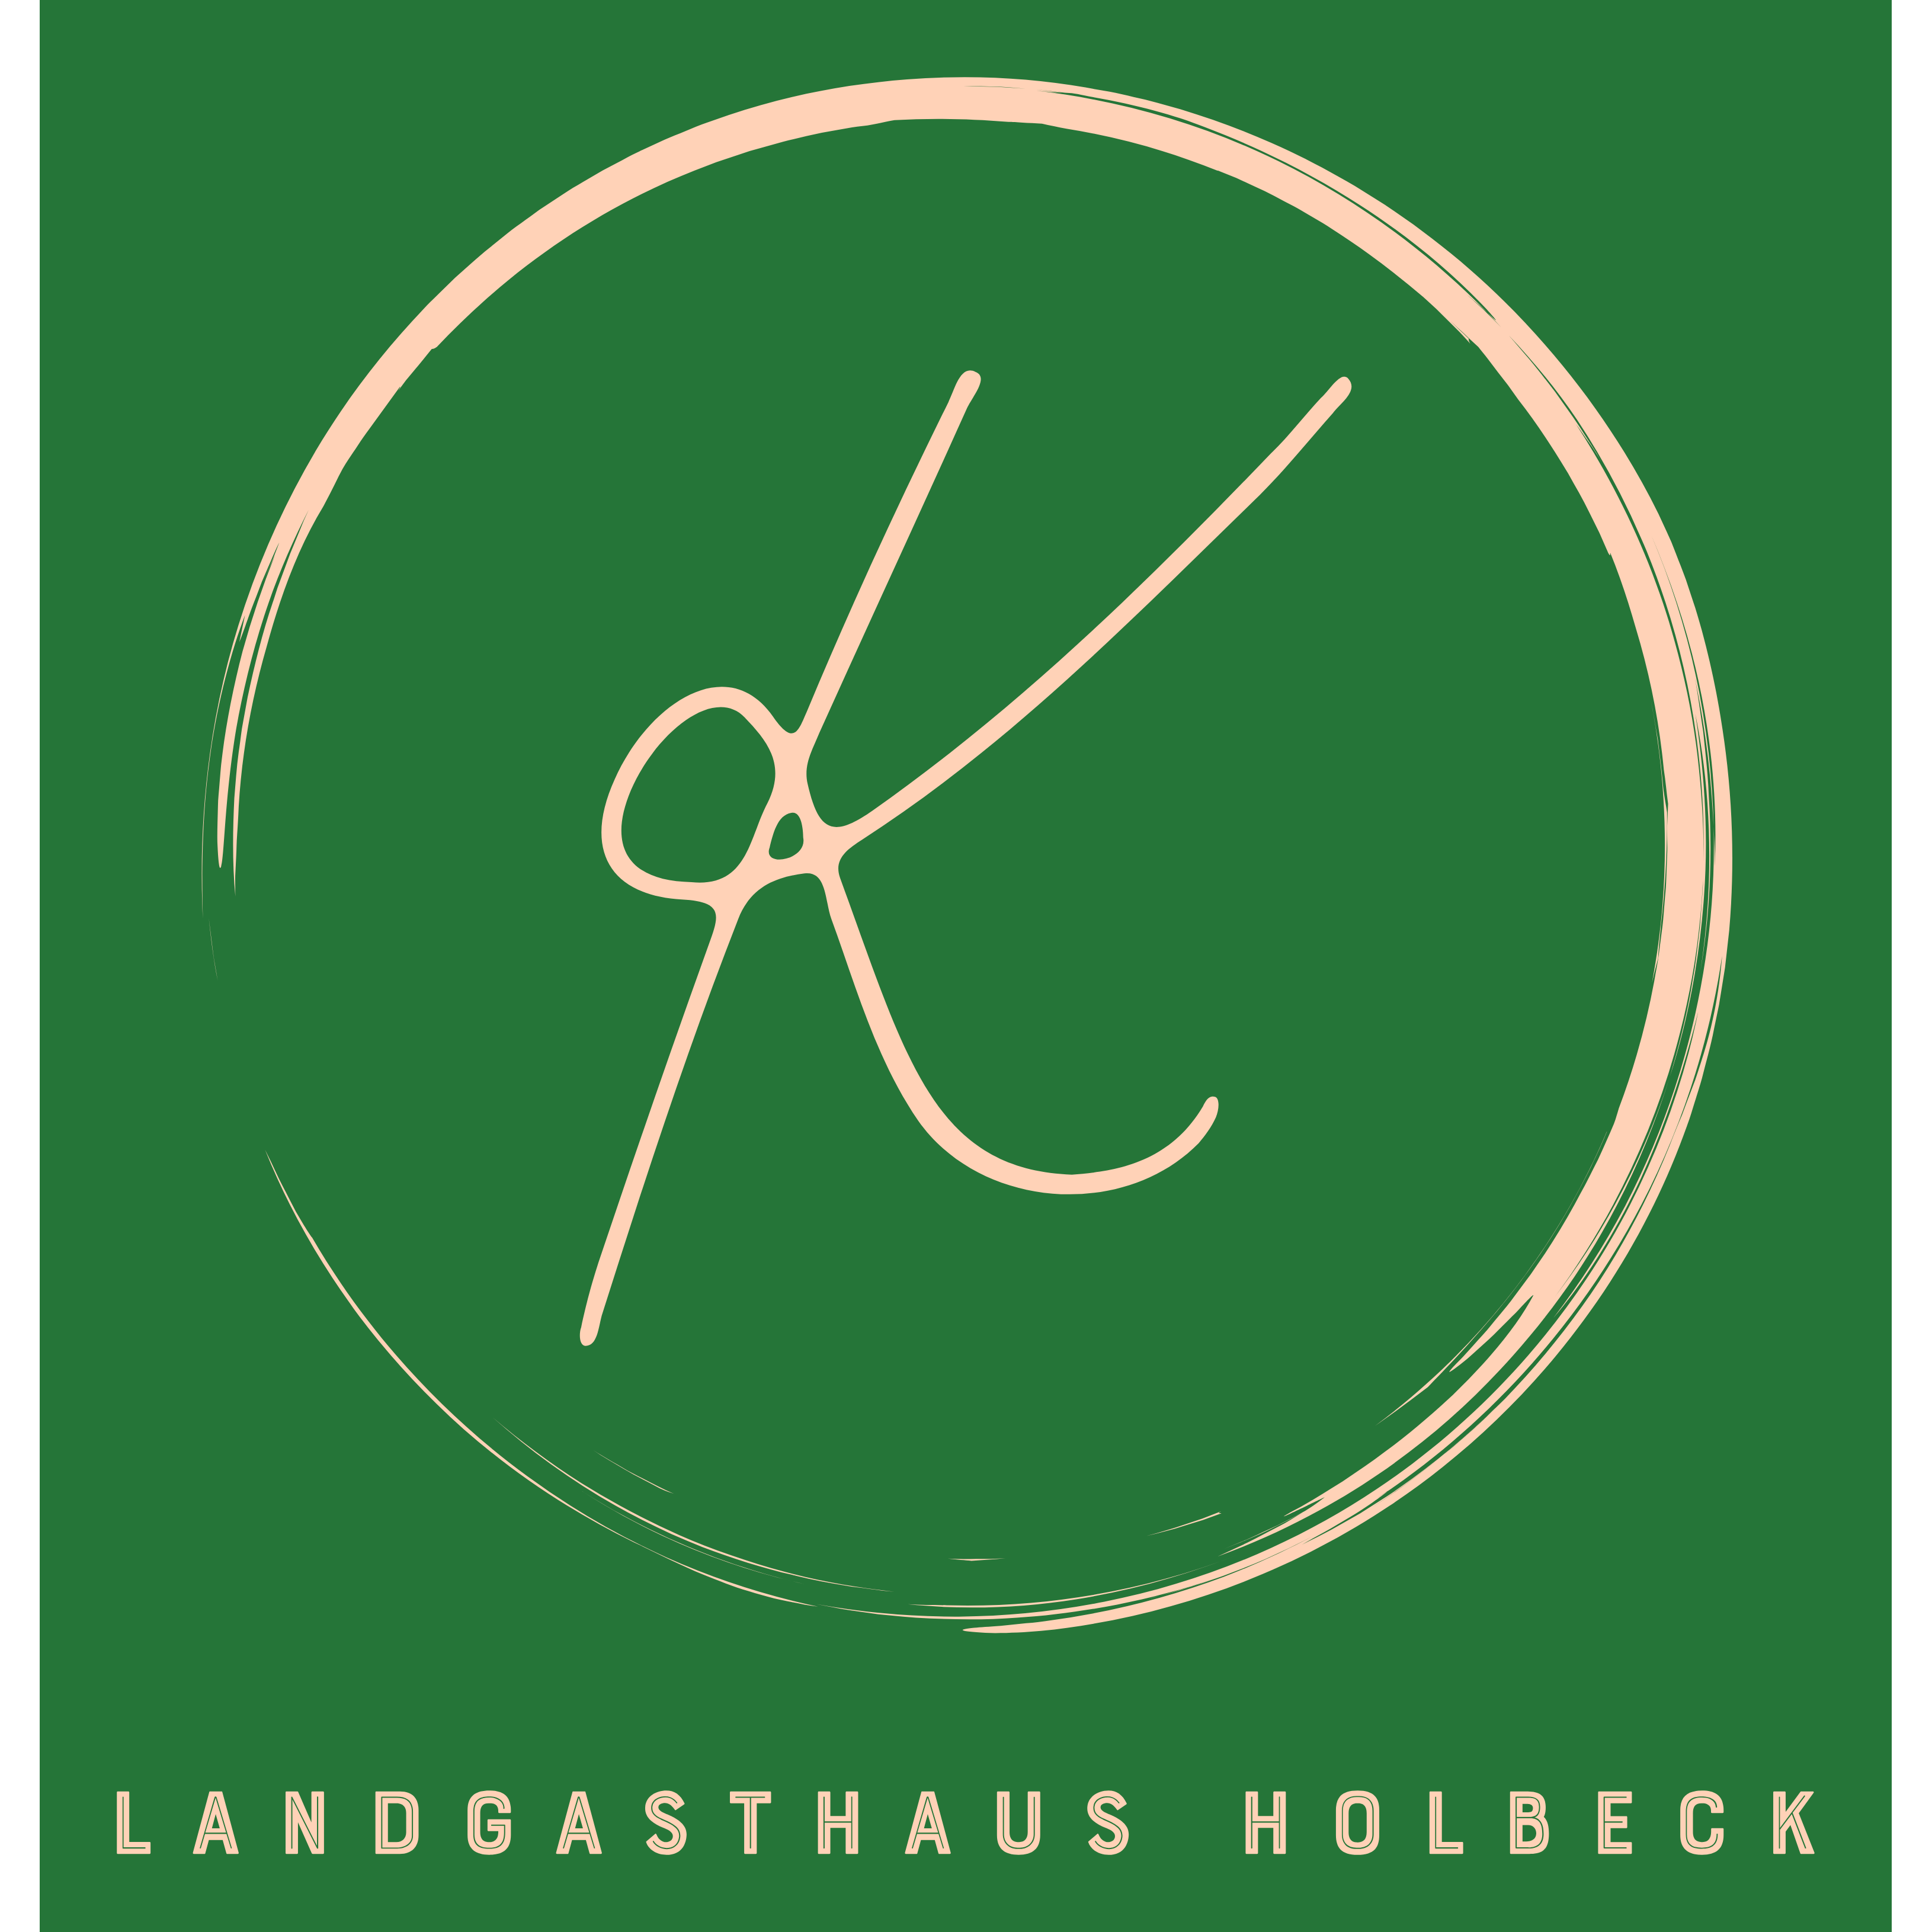 Landgasthaus Holbeck "Zu den Eichen" Logo